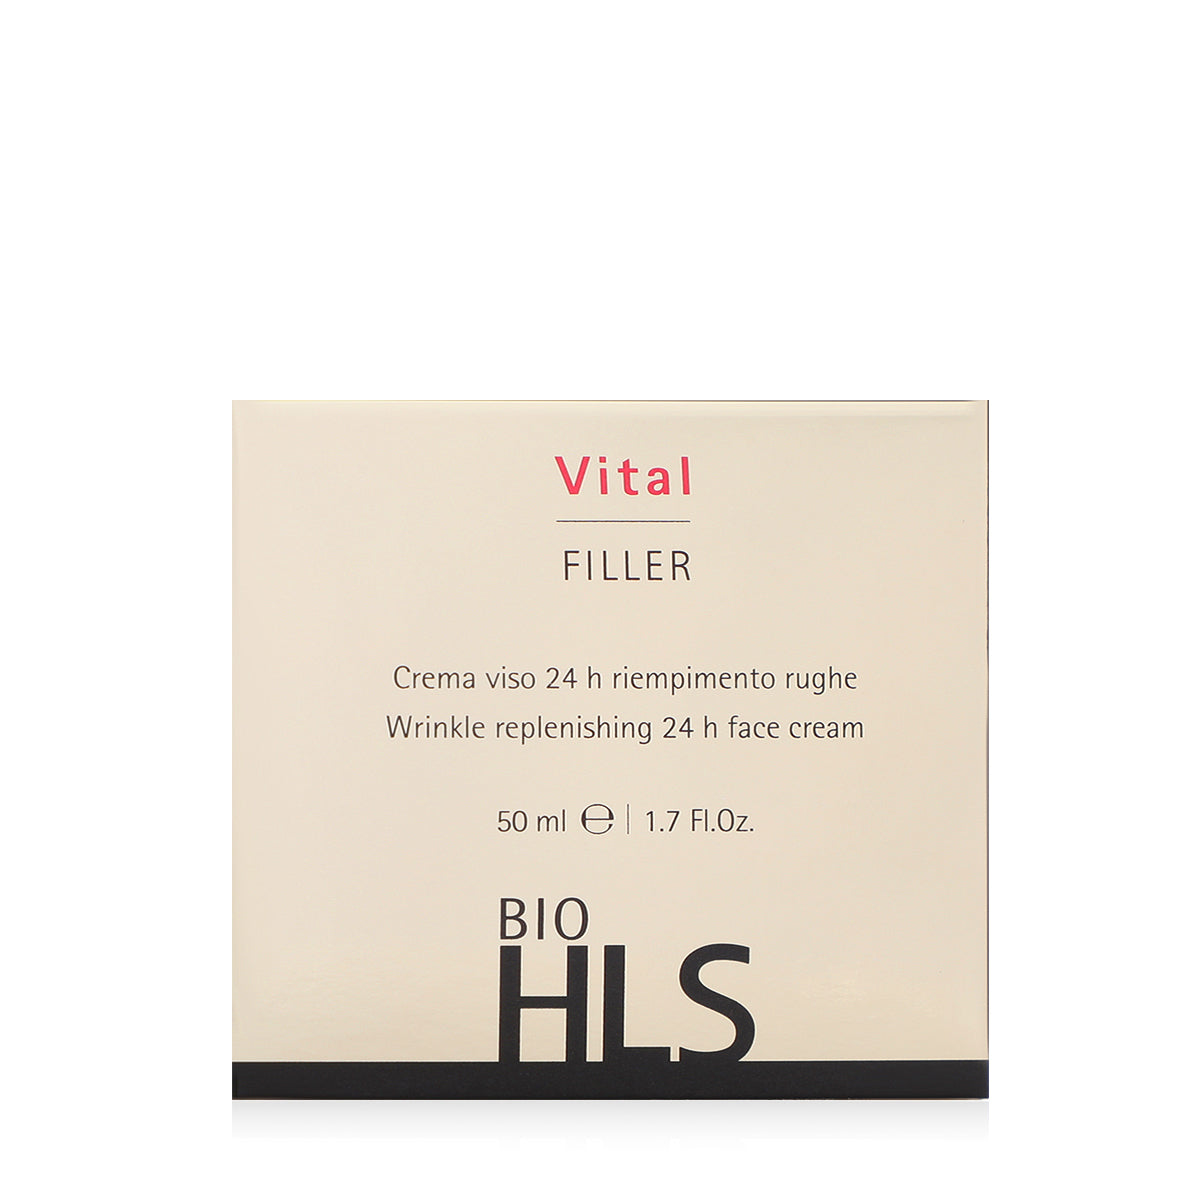 BIO HLS Vital Filler (+SPF10) - E11 Store